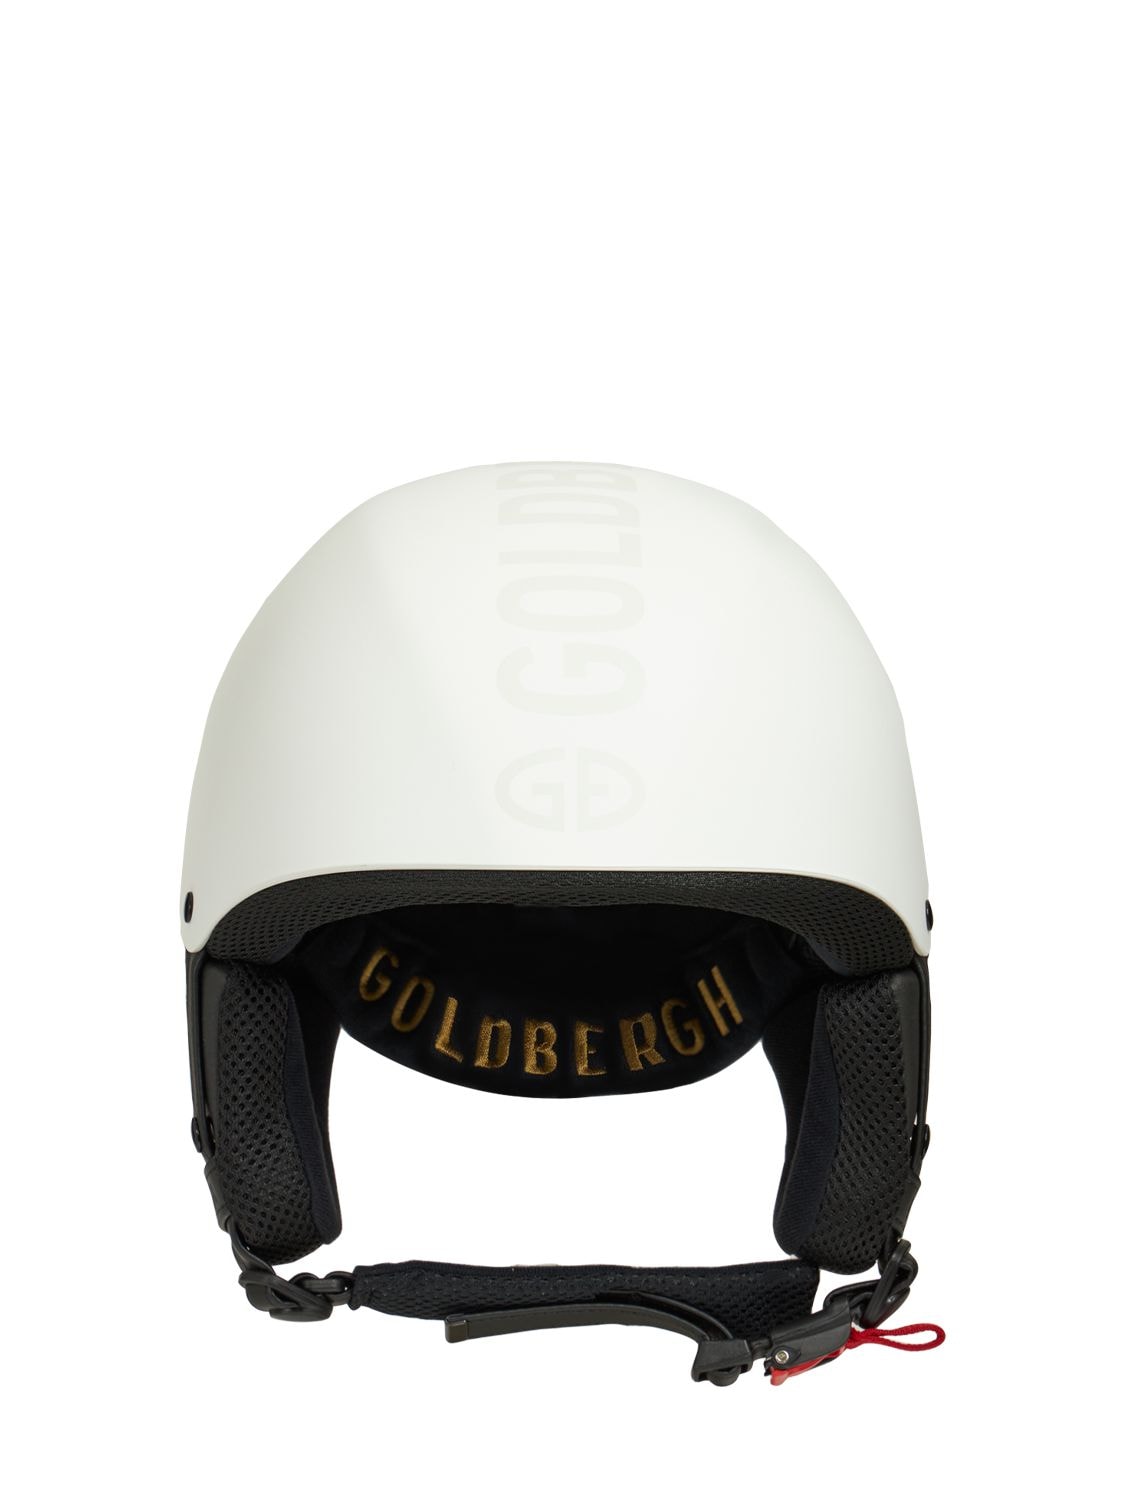 Goldbergh Smart Ski Helmet In White